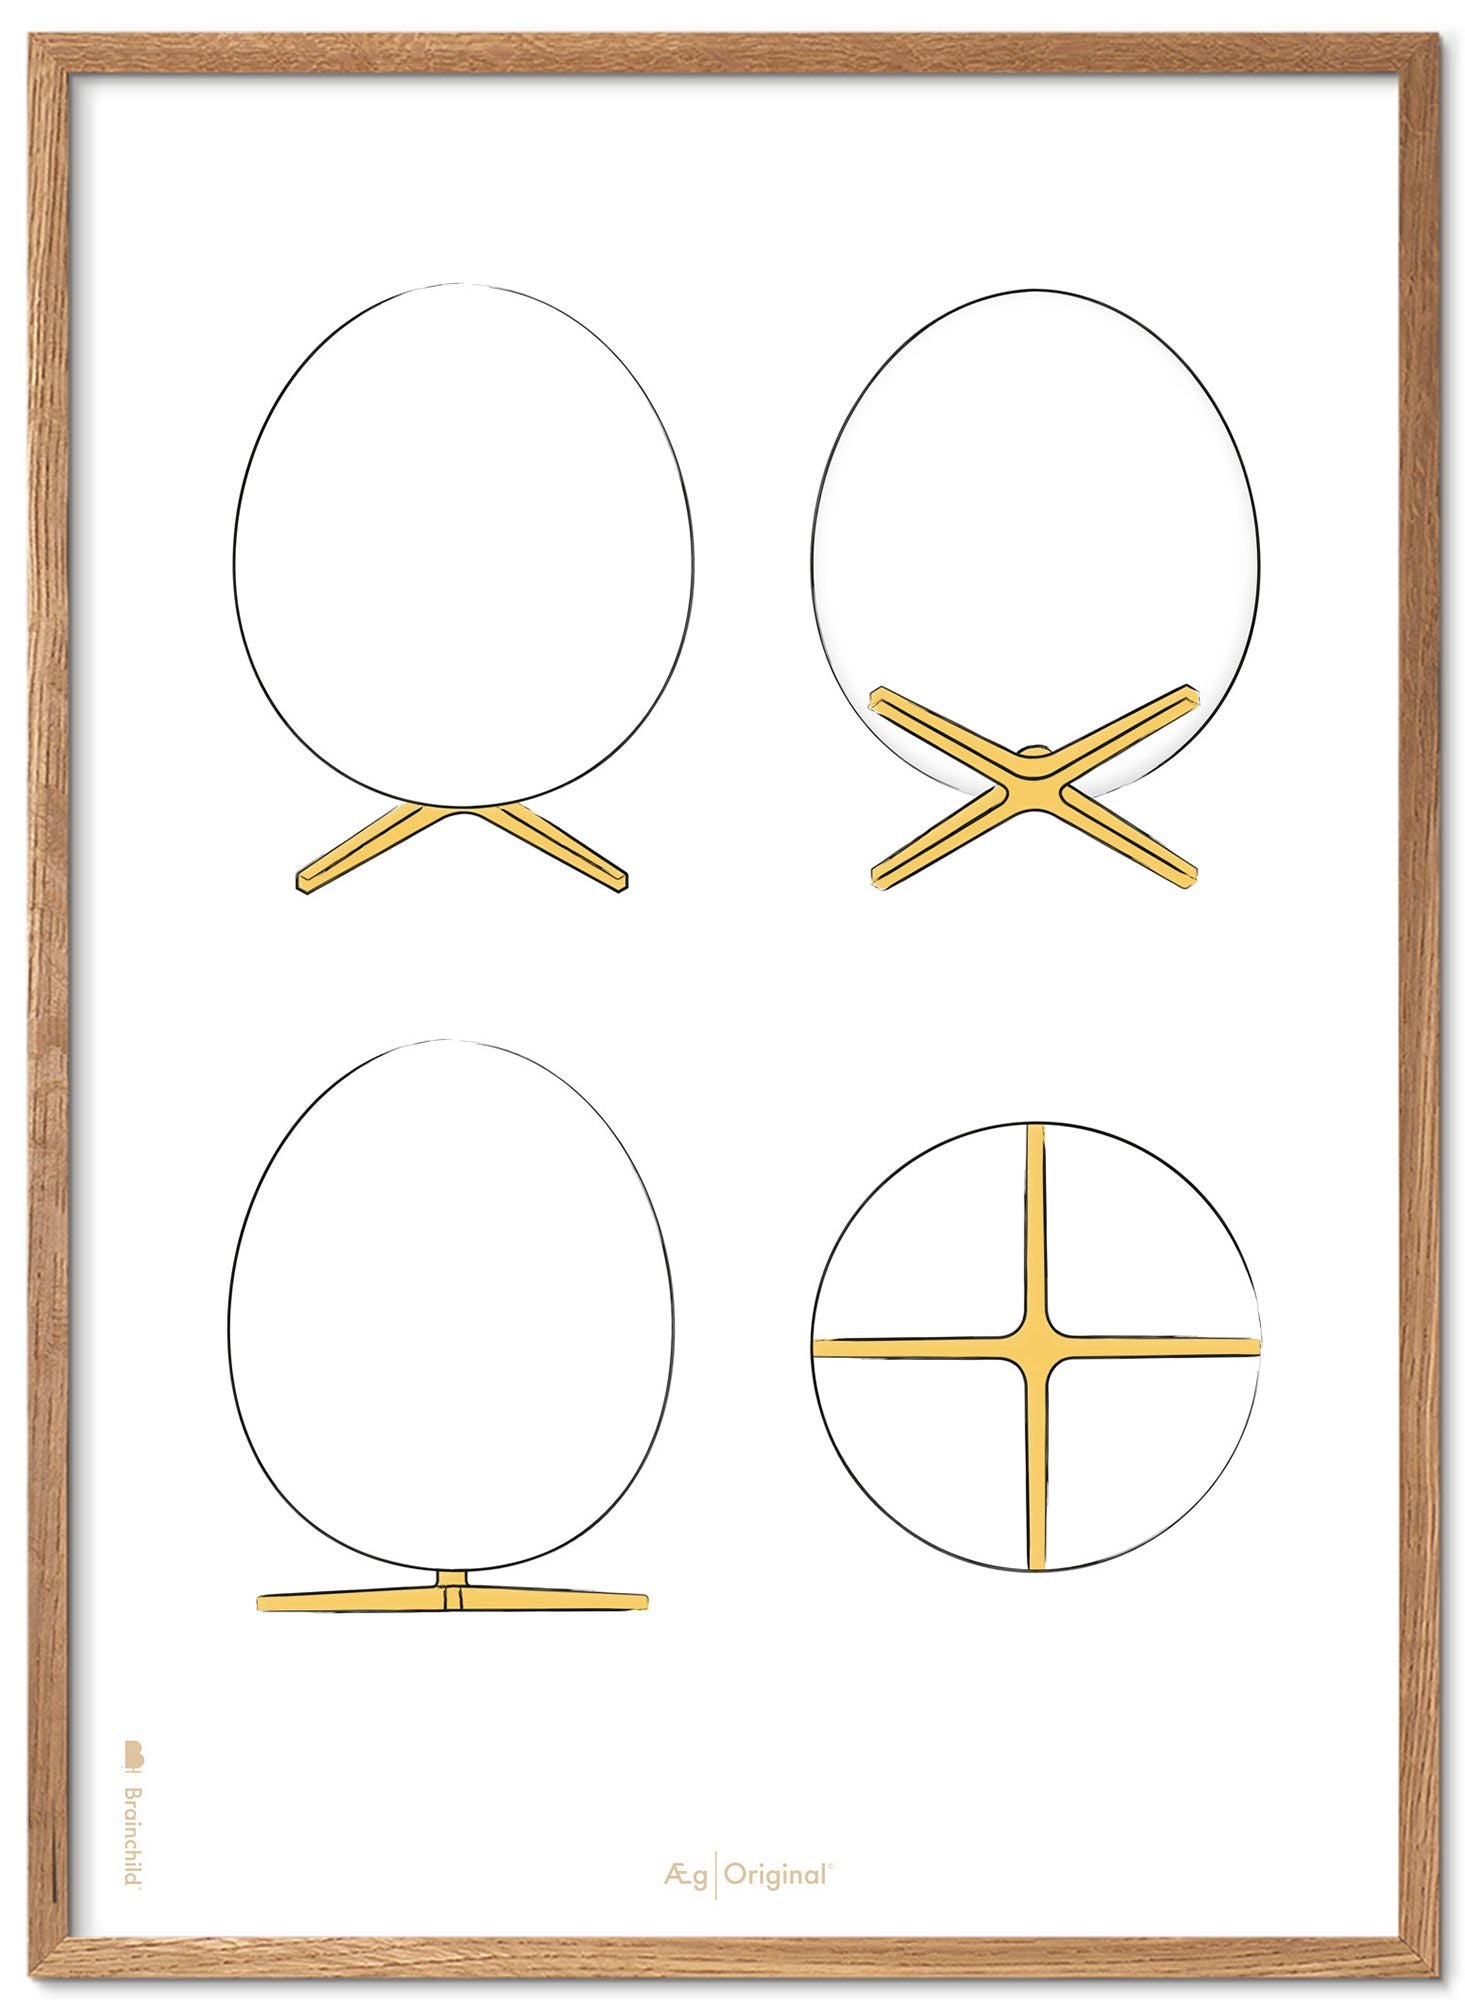 Brainchild Cadre pour affiche The Egg Design Sketches en bois clair A5, fond blanc